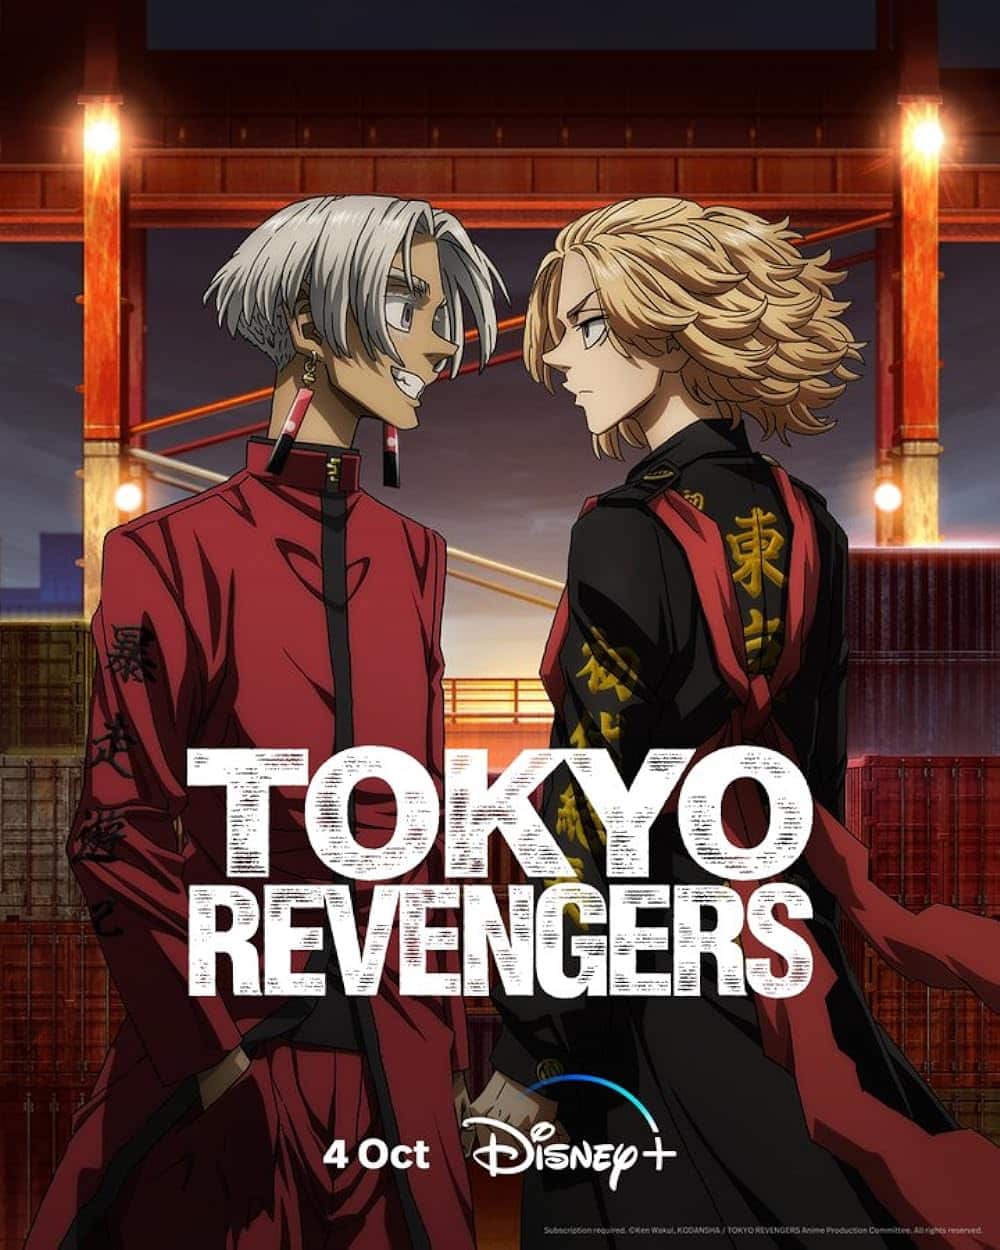 Tokyo Revengers: Tenjiku-hen โตเกียว รีเวนเจอร์ส (ภาค3) ตอนที่ 1-13 ซับไทย